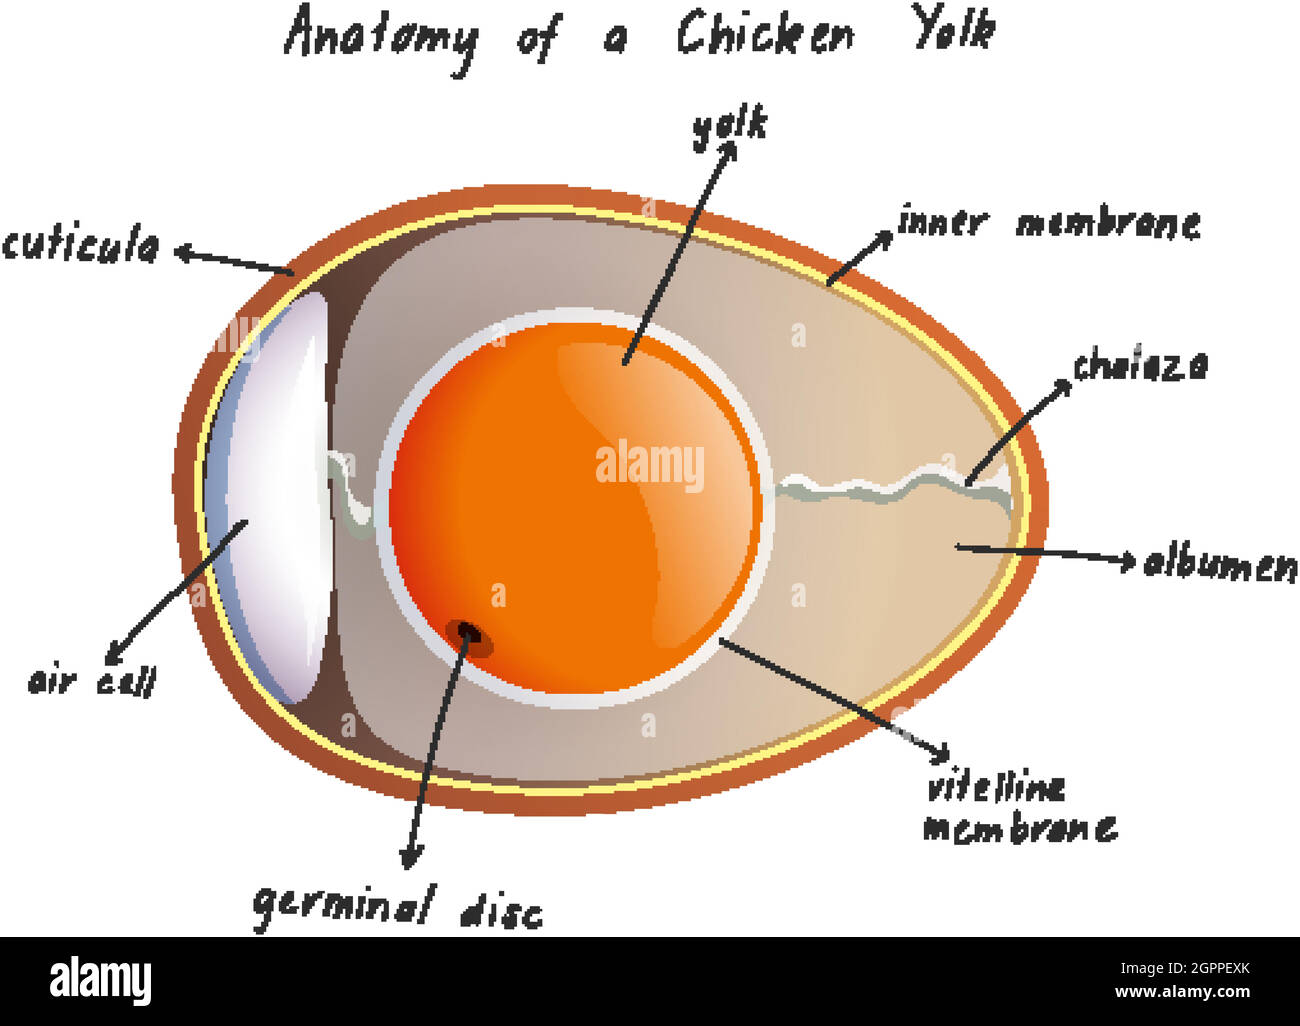 Anatomie eines Chicken Yolk Stock Vektor